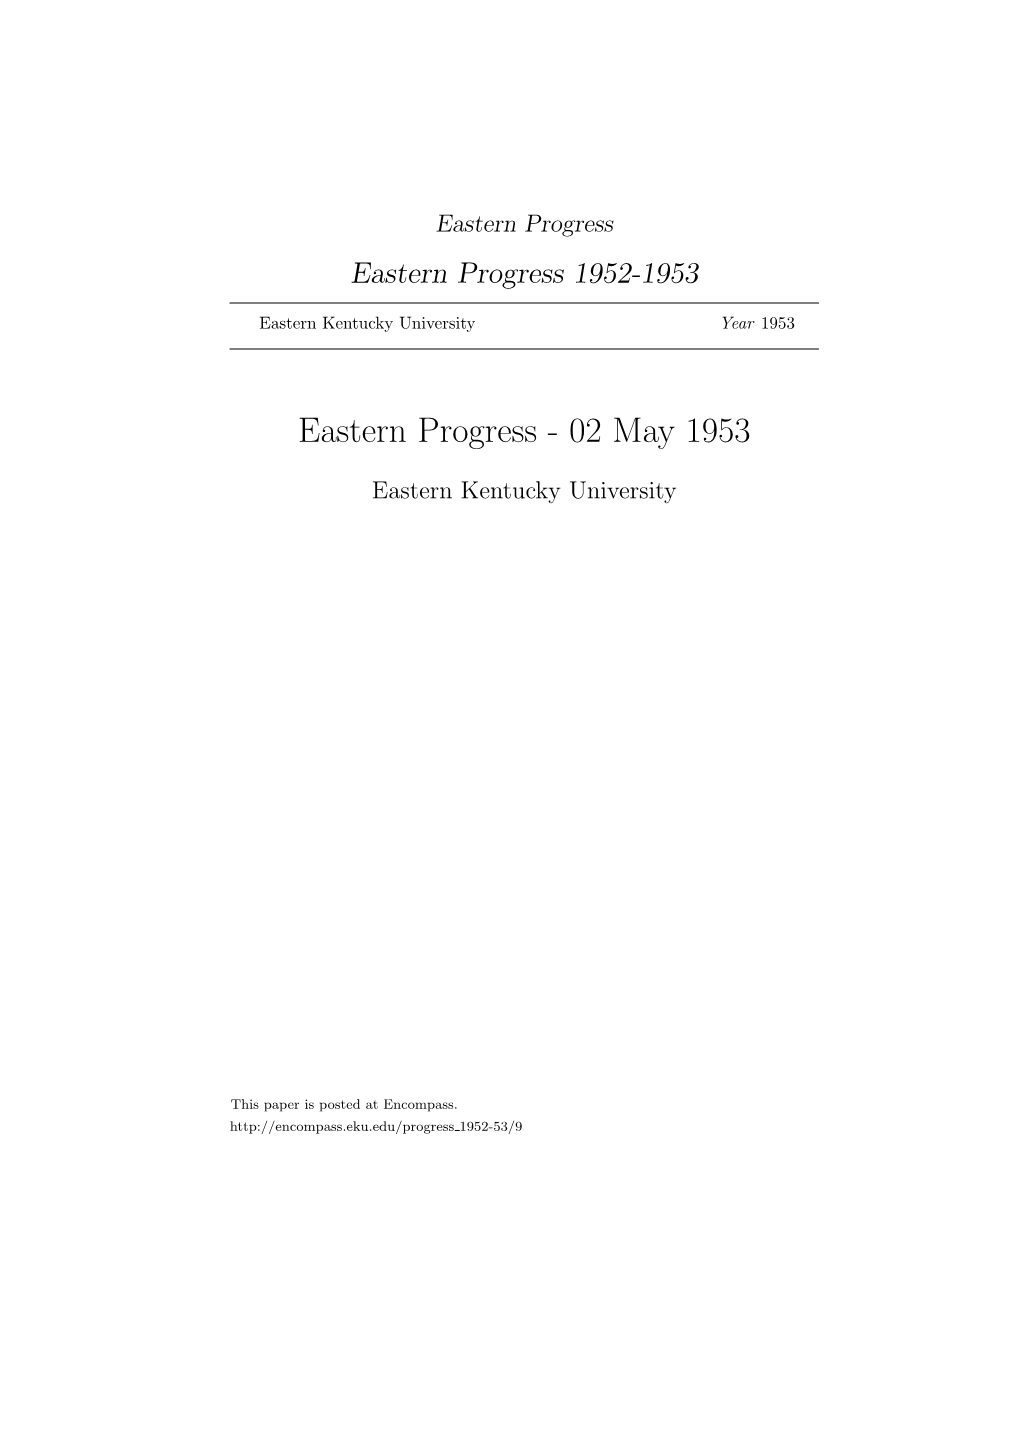 Eastern Progress Eastern Progress 1952-1953